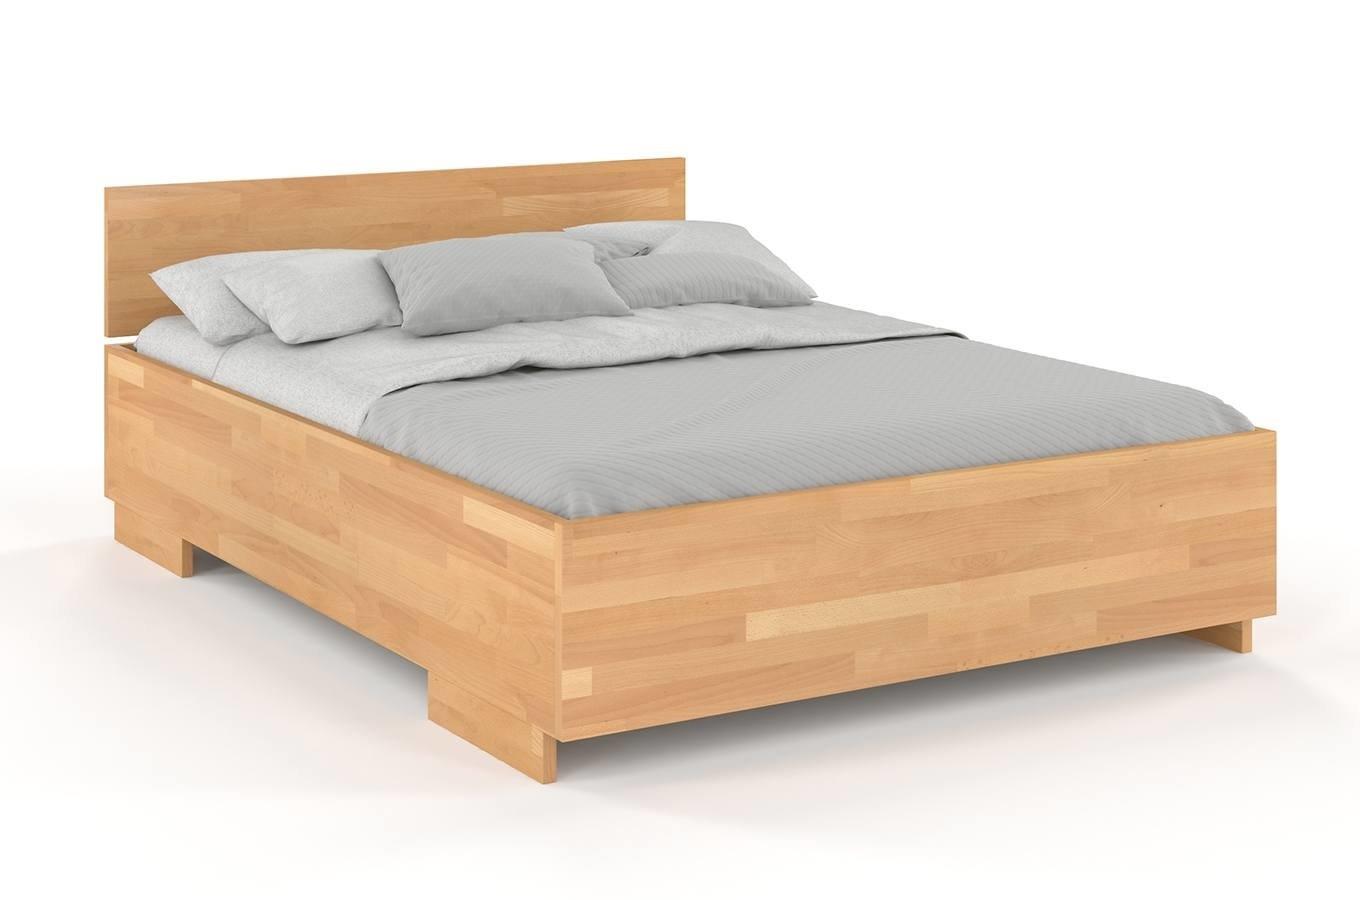 Łóżko drewniane bukowe Visby Bergman High BC (skrzynia na pościel) / 200x200 cm, kolor naturalny